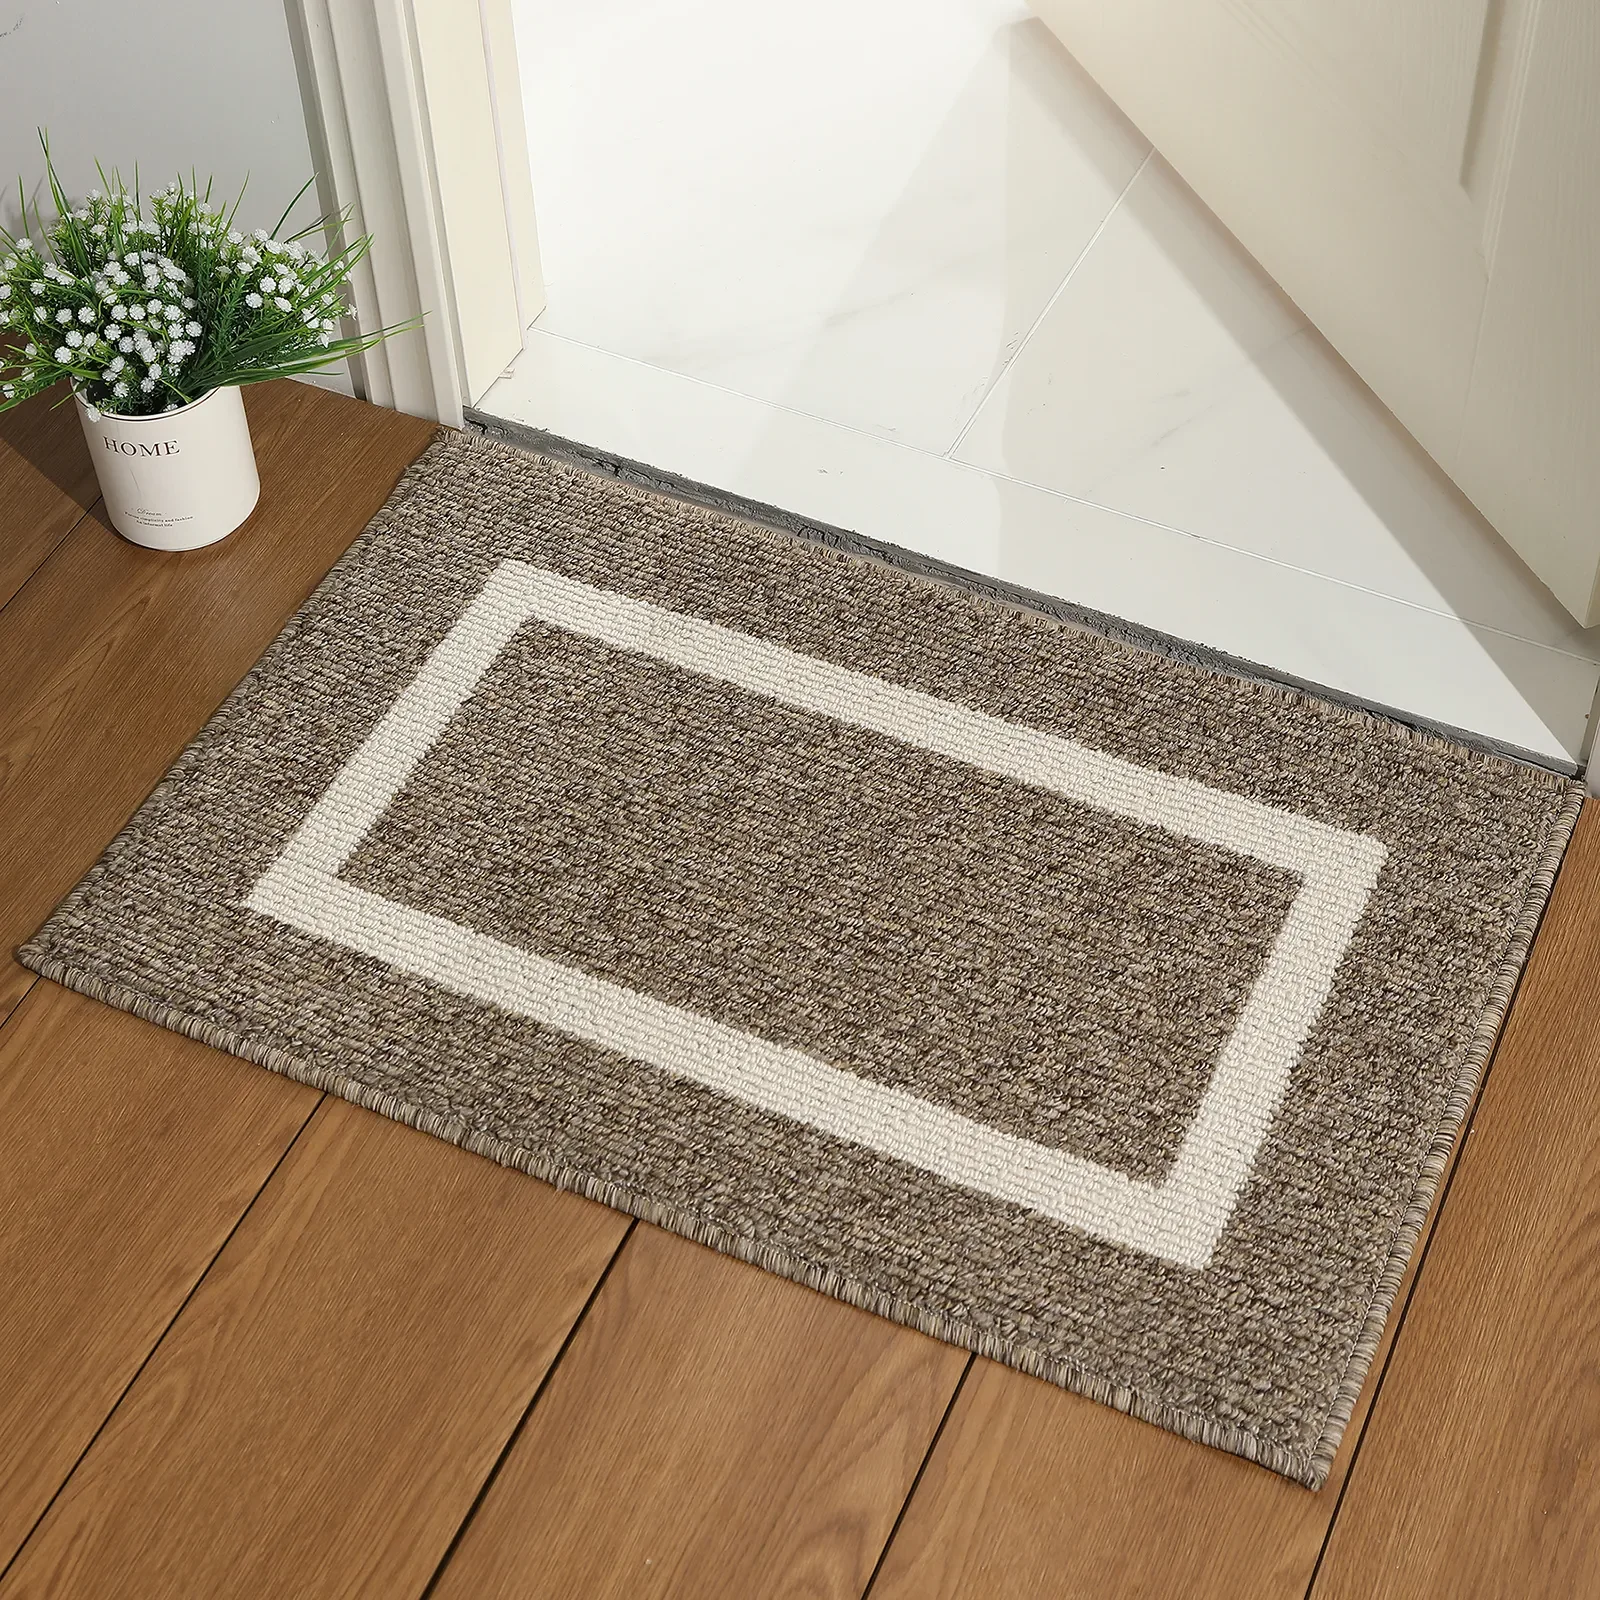 

Door Resistant Absorbent Non-slip Floor Feet Rug Entrance Protector Welcome Outdoor Clean Olanly Soft Kitchen Doormat Mat Dirt